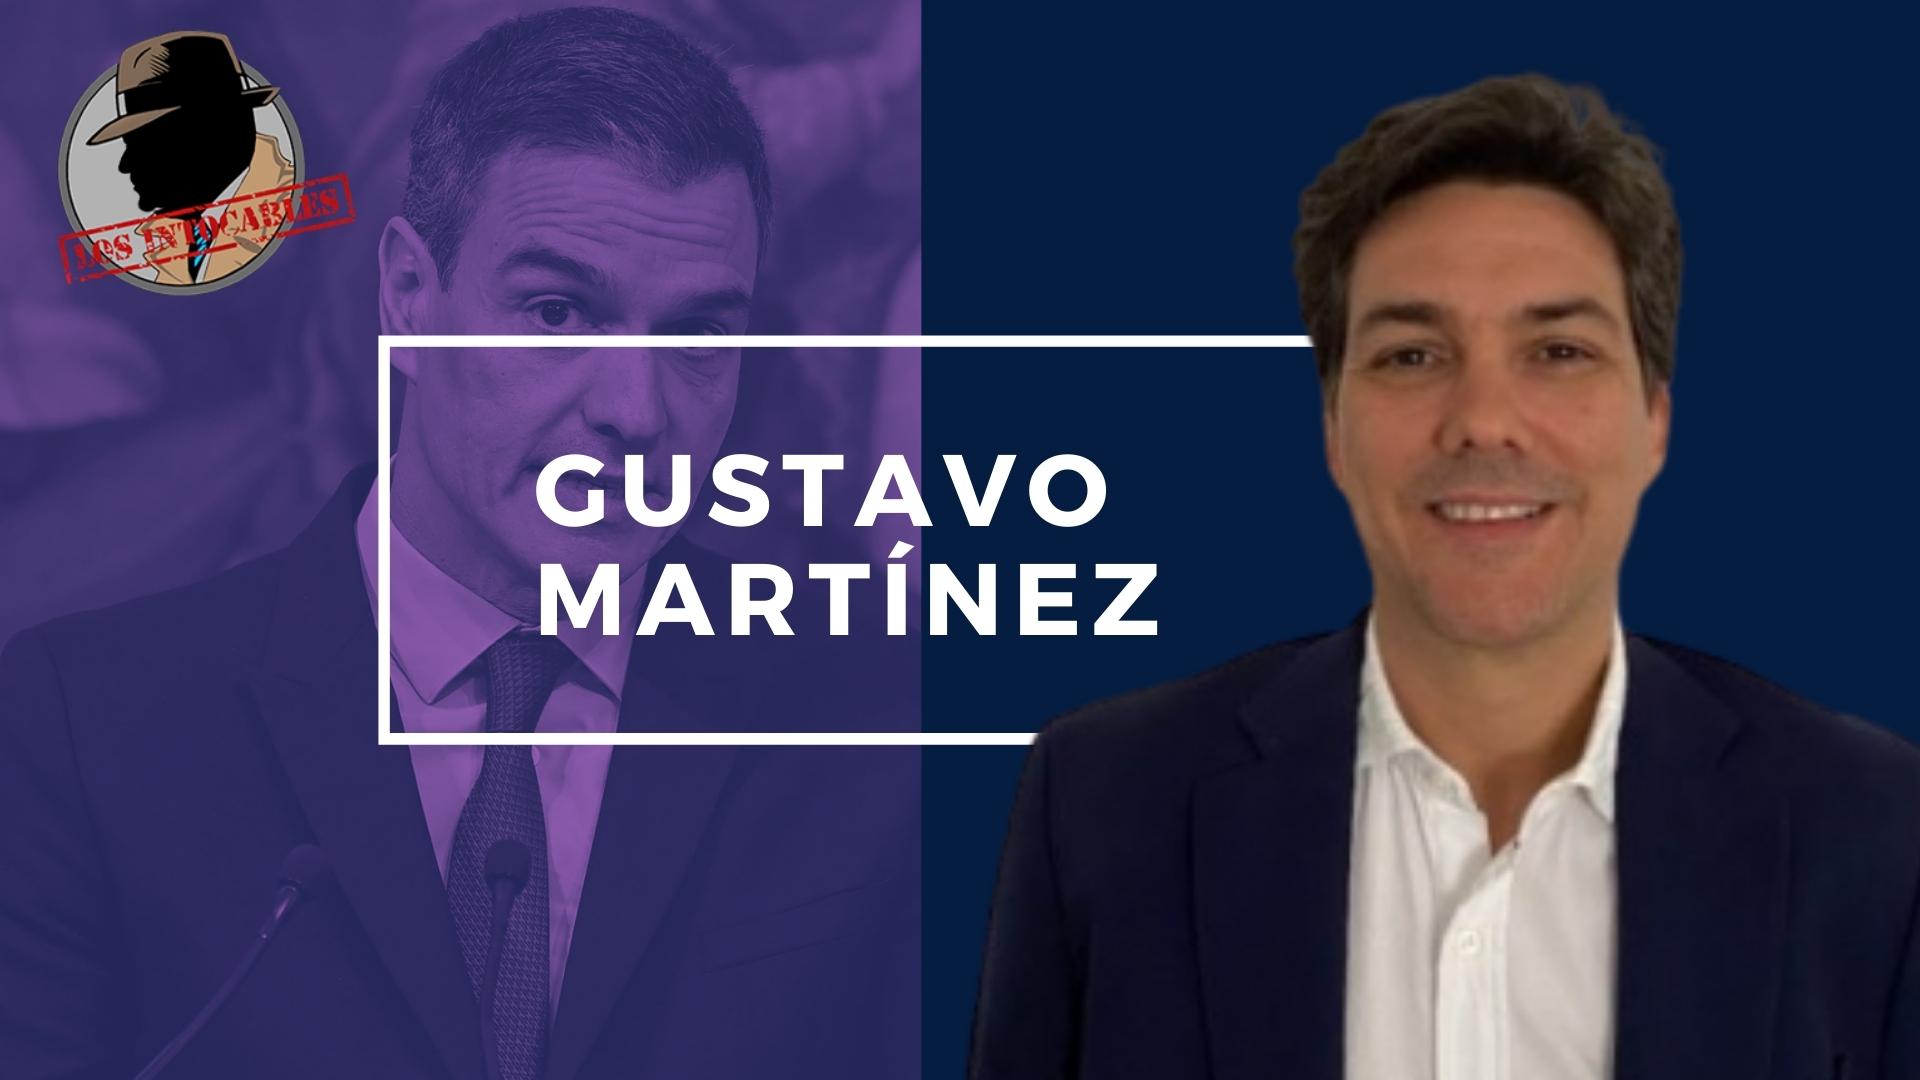 GUSTAVO MARTÍNEZ: EL SOCIALISMO VIVE DE LOS POBRES Y POR ESO ATACA A LAS EMPRESAS